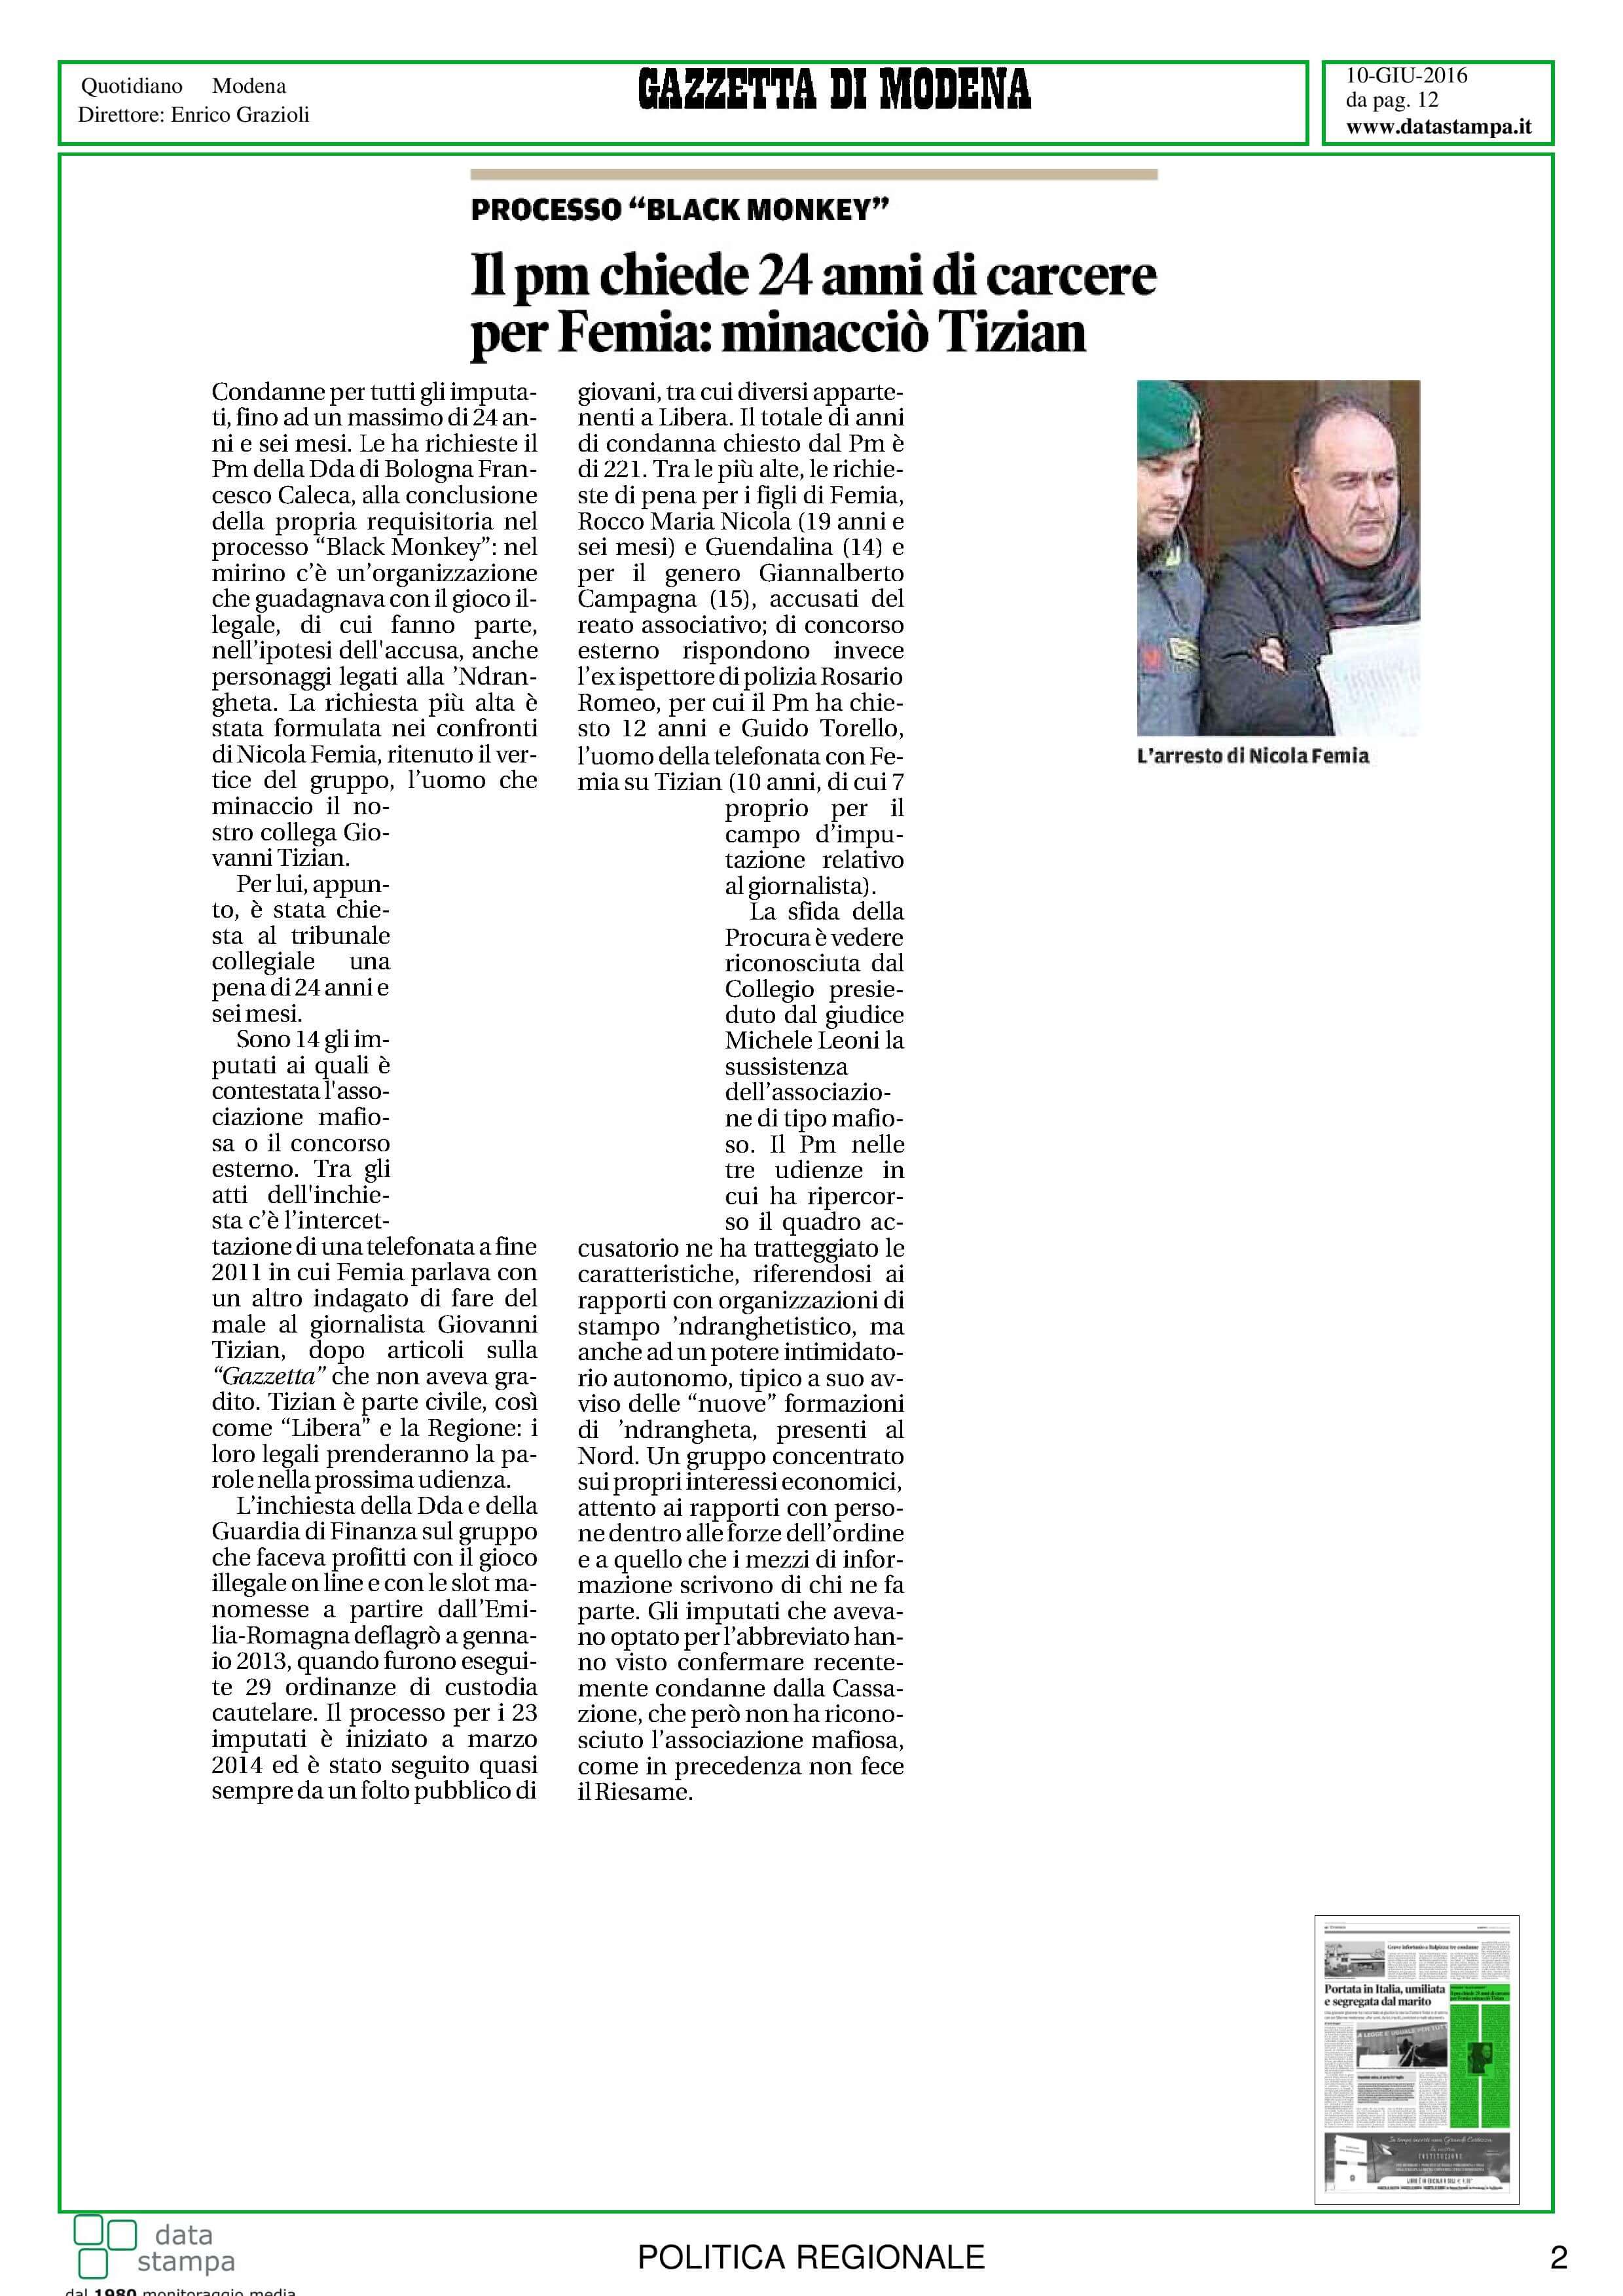 mafia-legalita-in-er-9-10-giugno-page-003